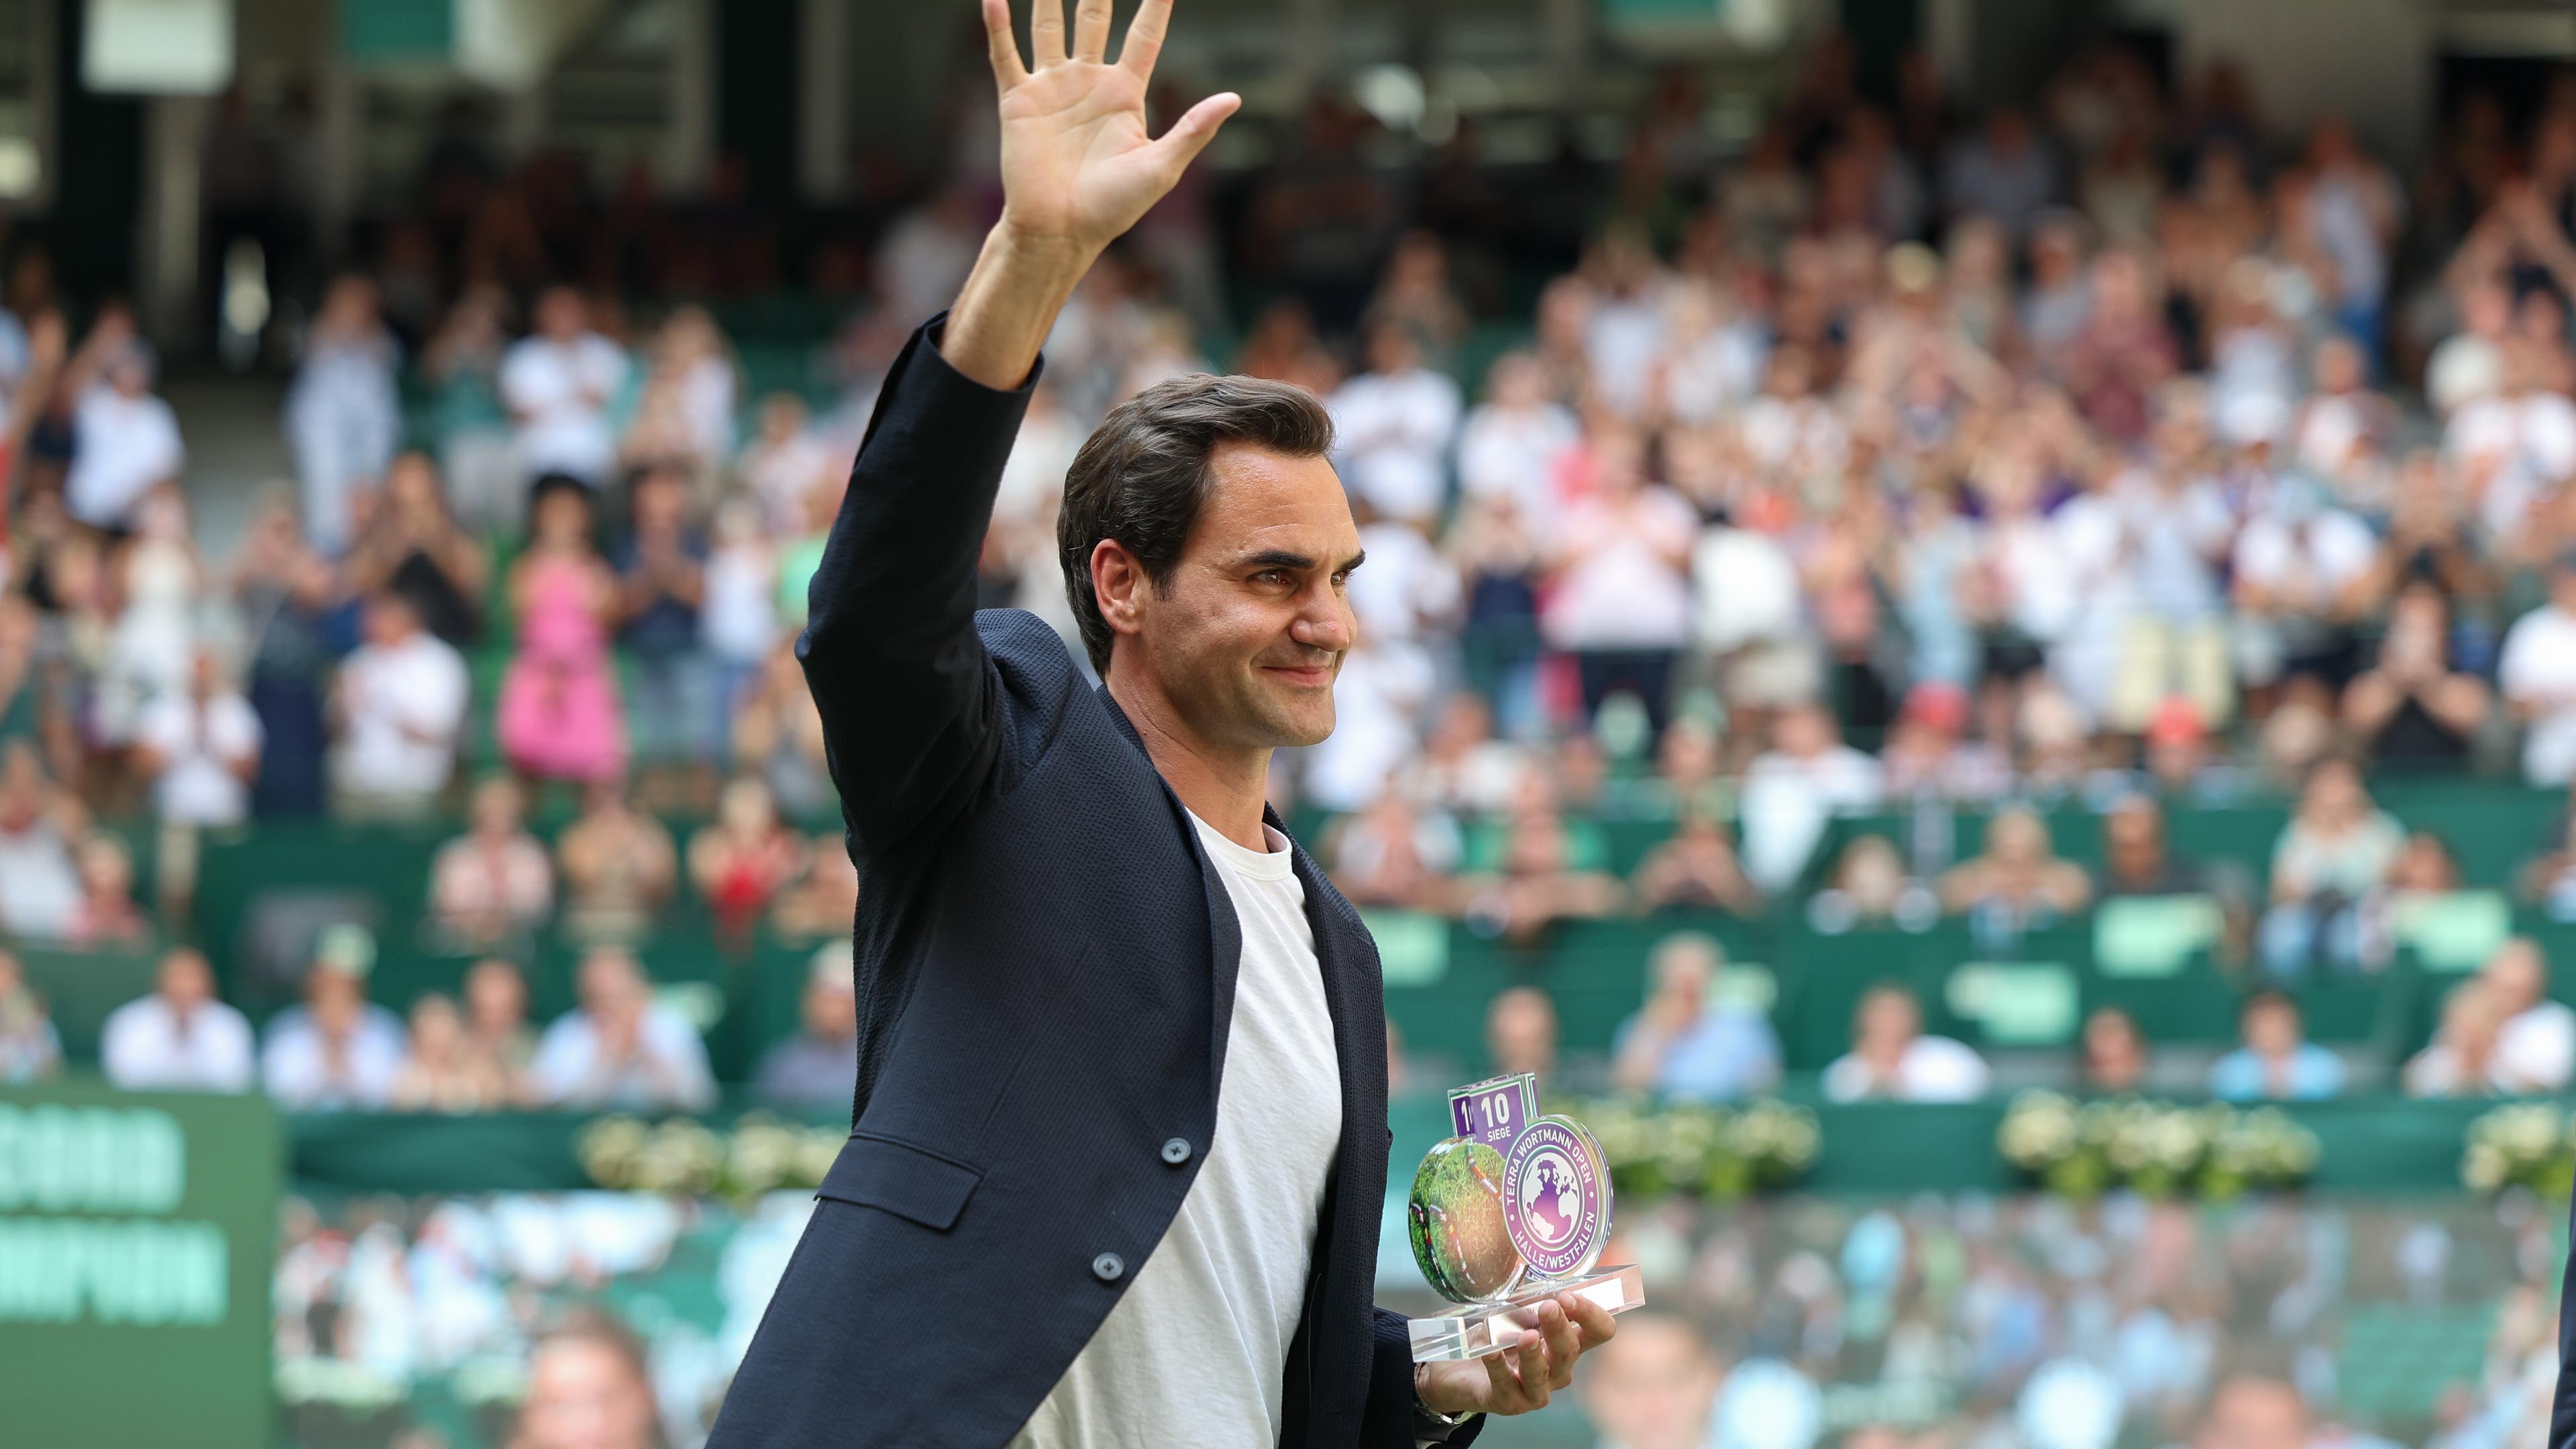 Tennis in Halle Zverev und Struff weiter, Jubel für Federer